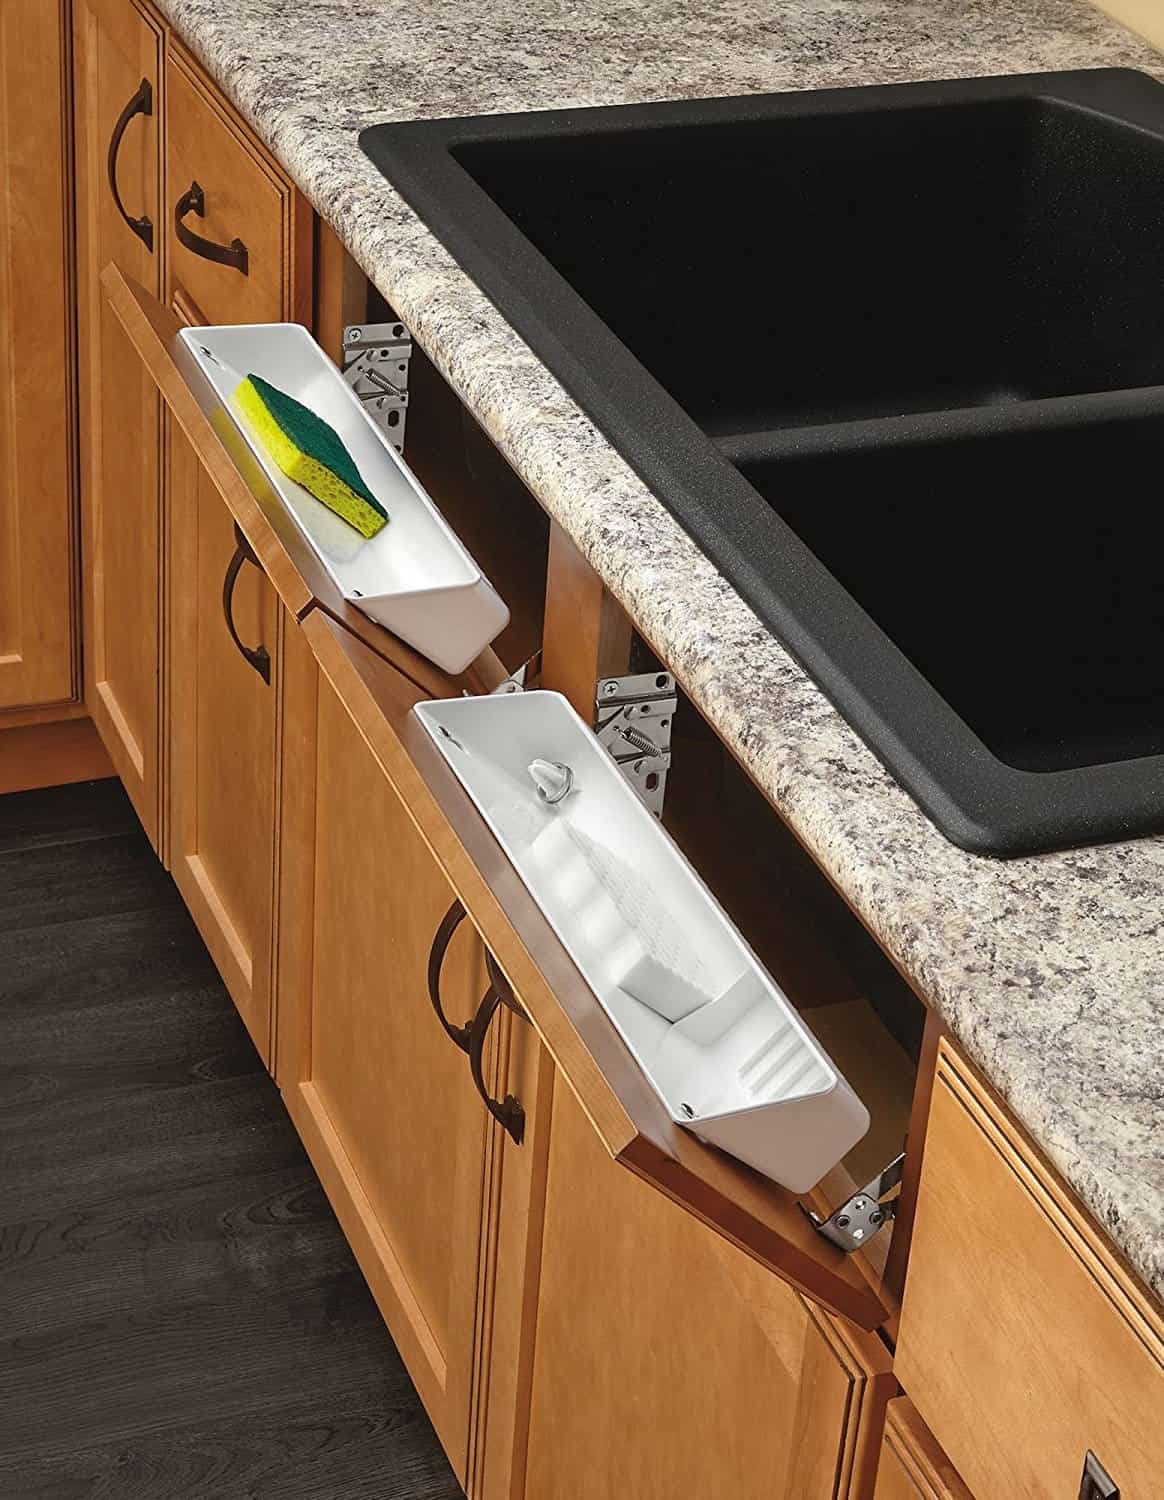 False drawer kit to make under sink hinges for kitchen organization.